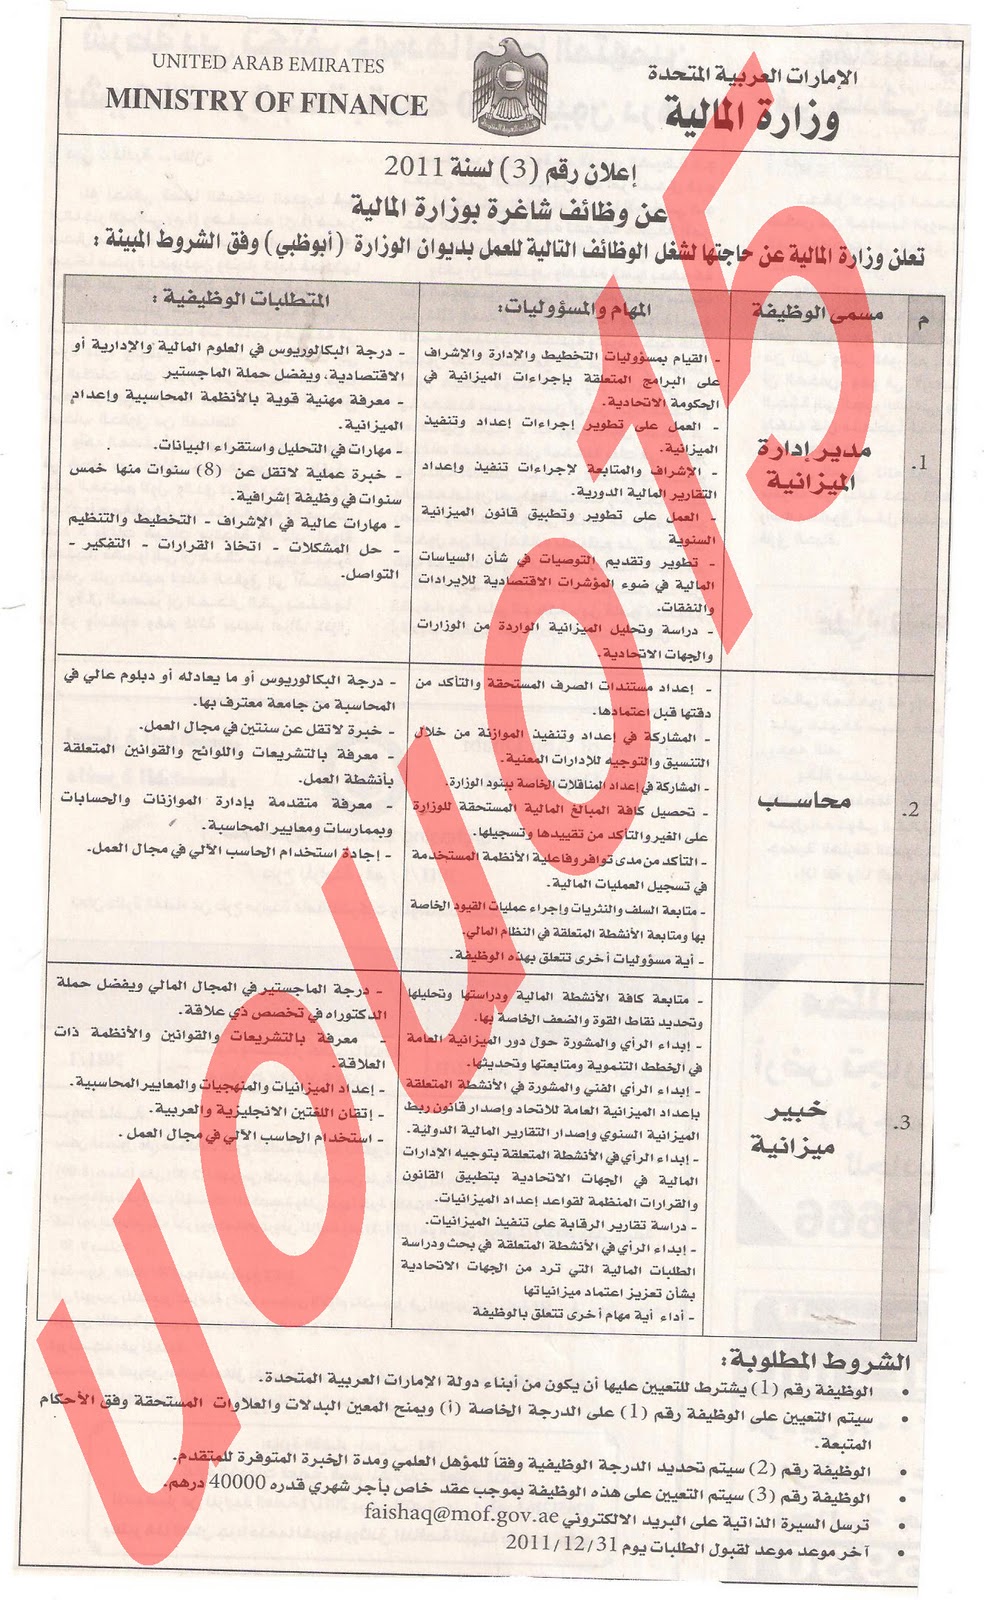  وظائف شاغرة من  جريدة الخليج الاربعاء 14\12\2011 , وظائف حكومية متميزة  Picture+002